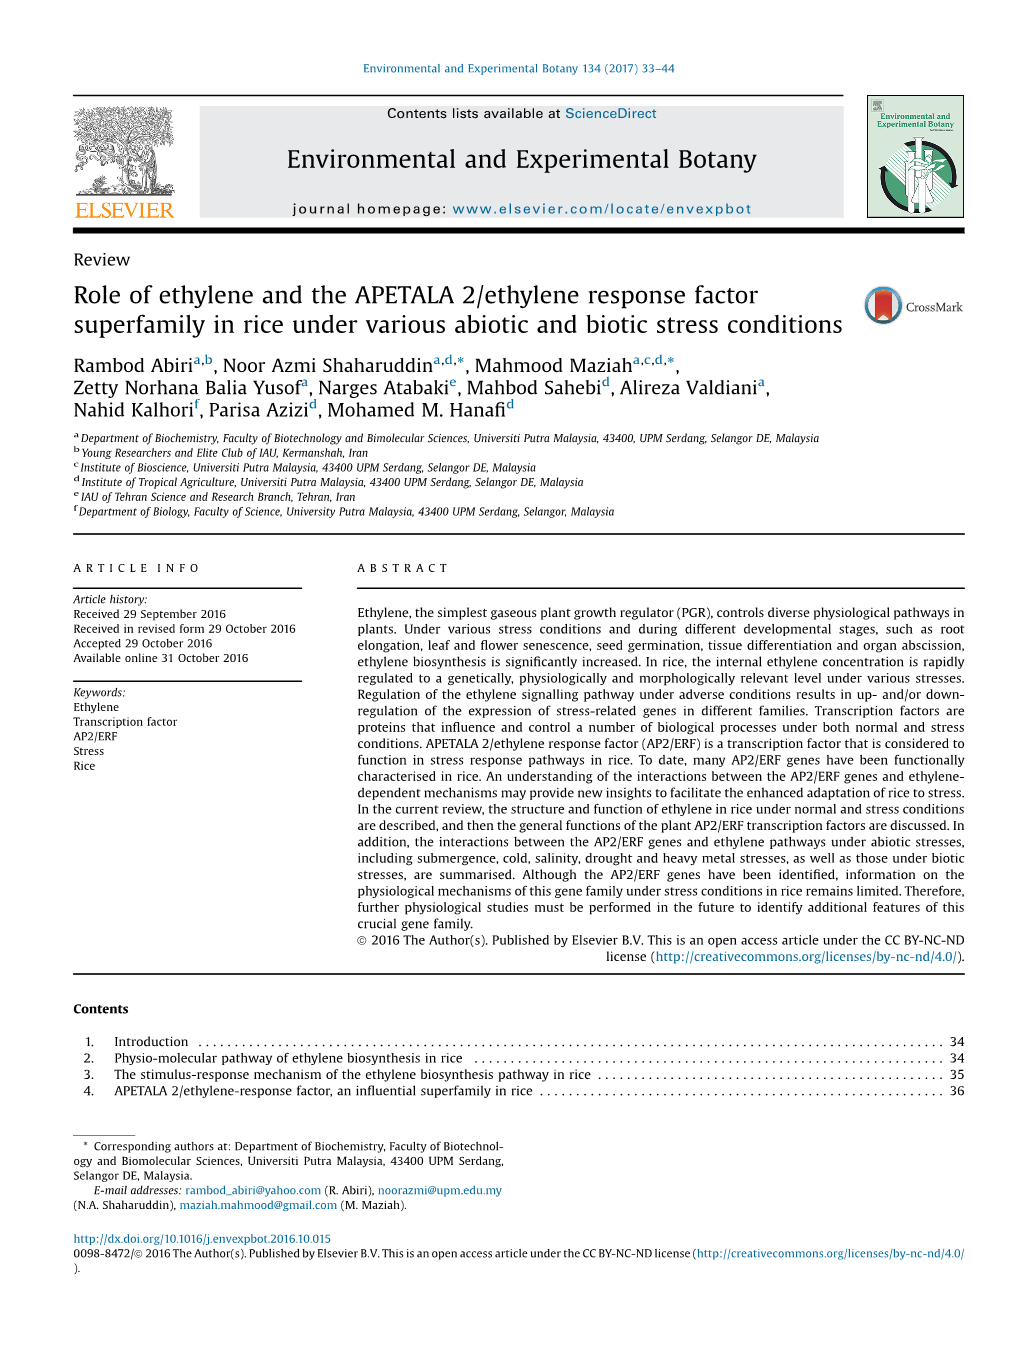 Role of Ethylene and the APETALA 2/Ethylene Response Factor